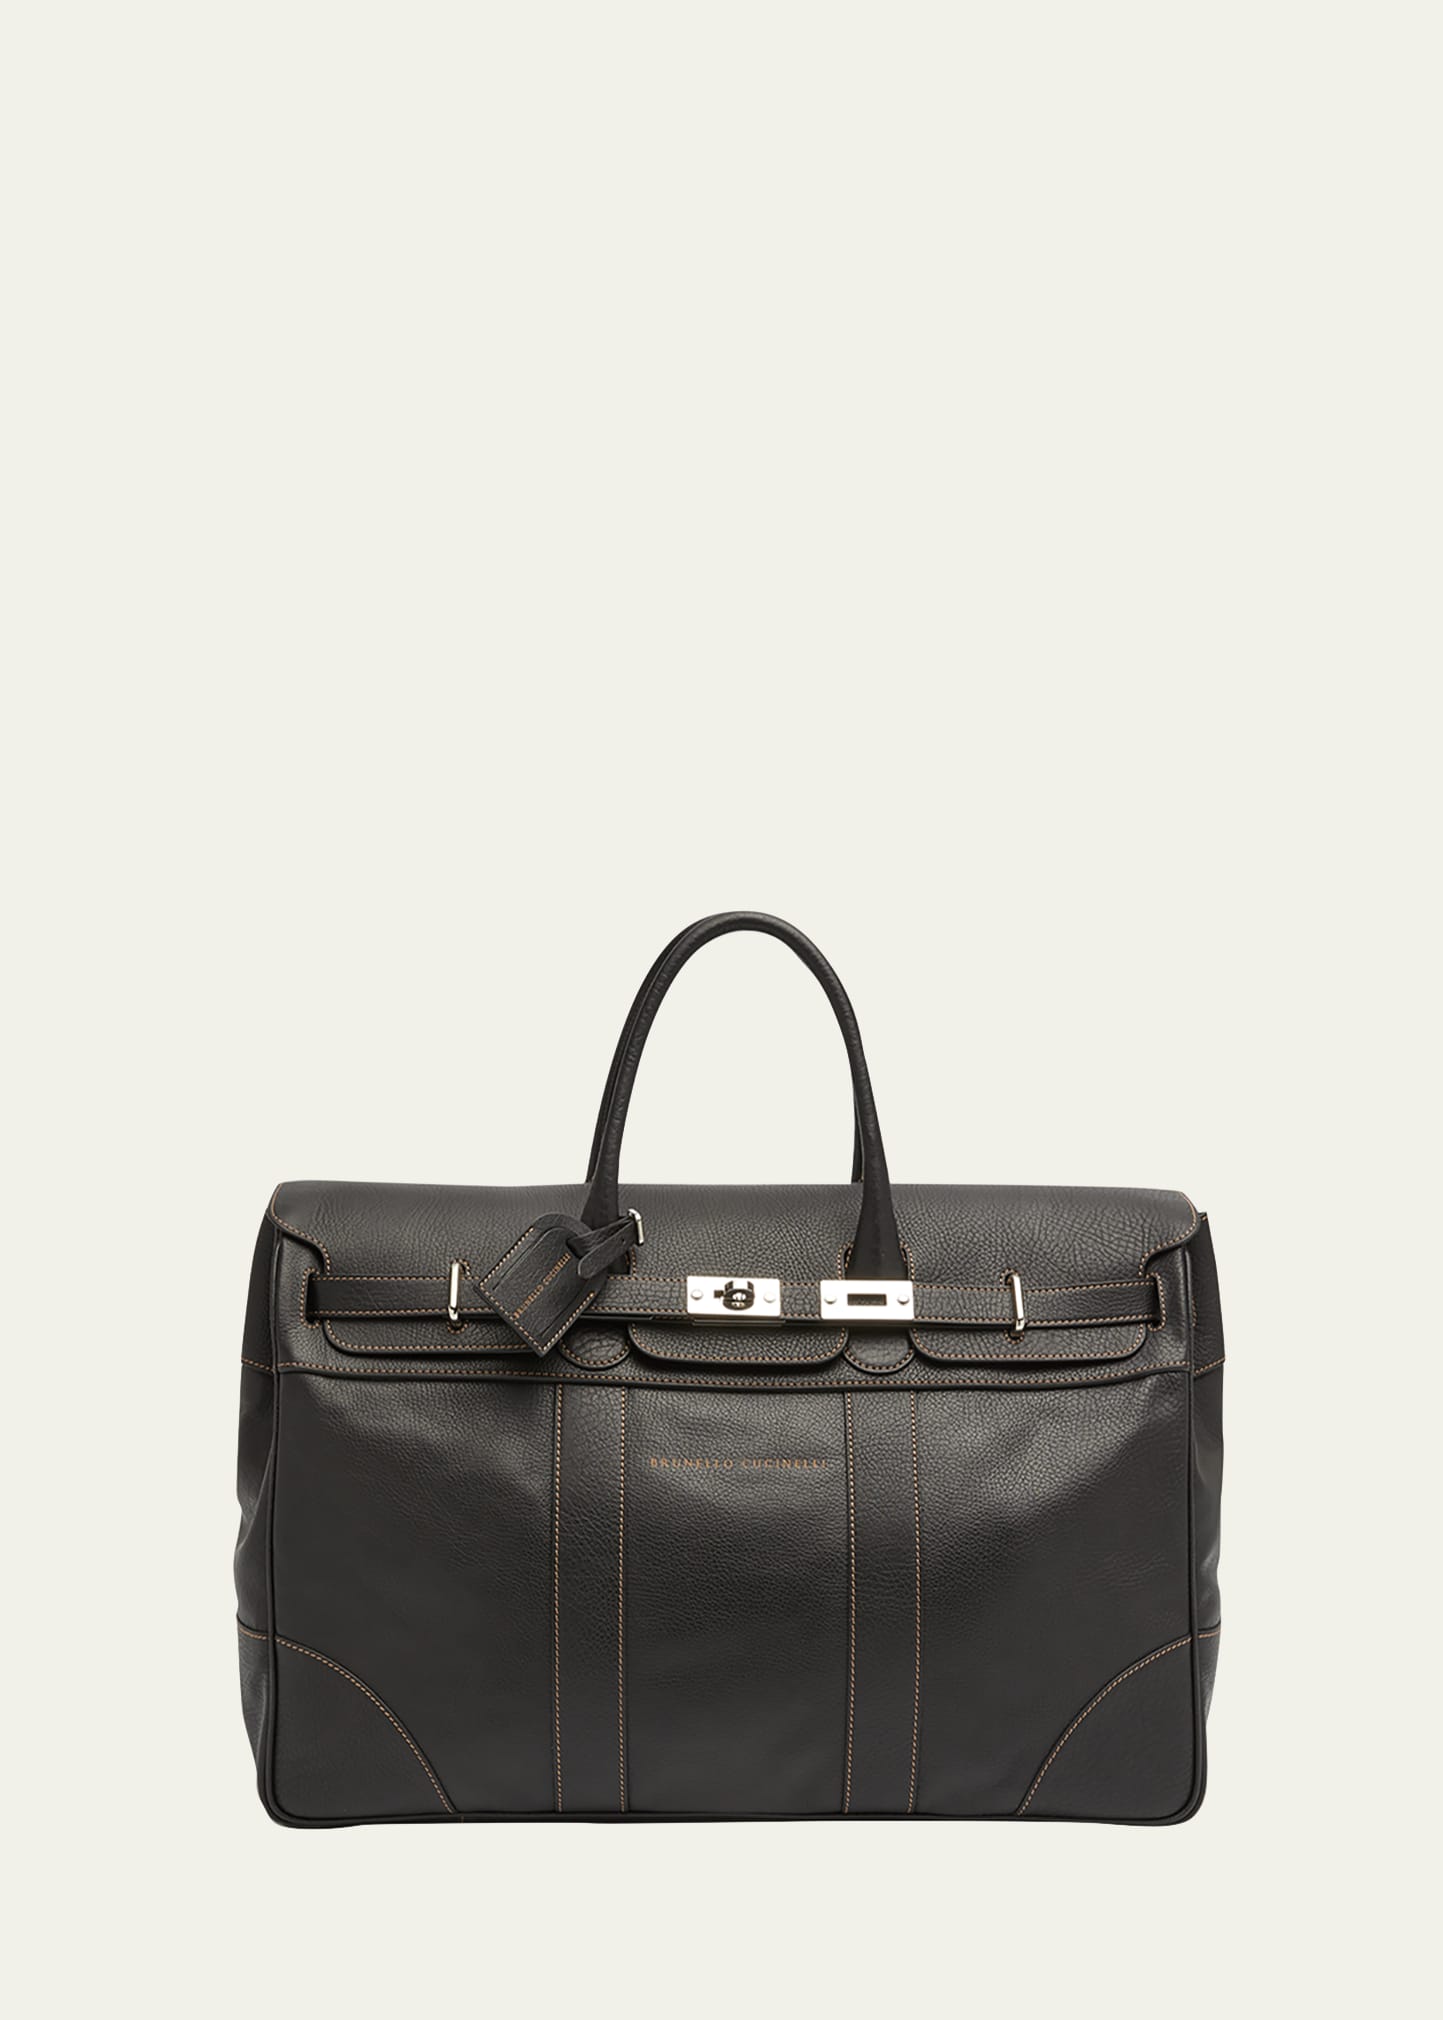 Brunello Cucinelli Men's Weekender Country Duffel Bag In C101 Nero